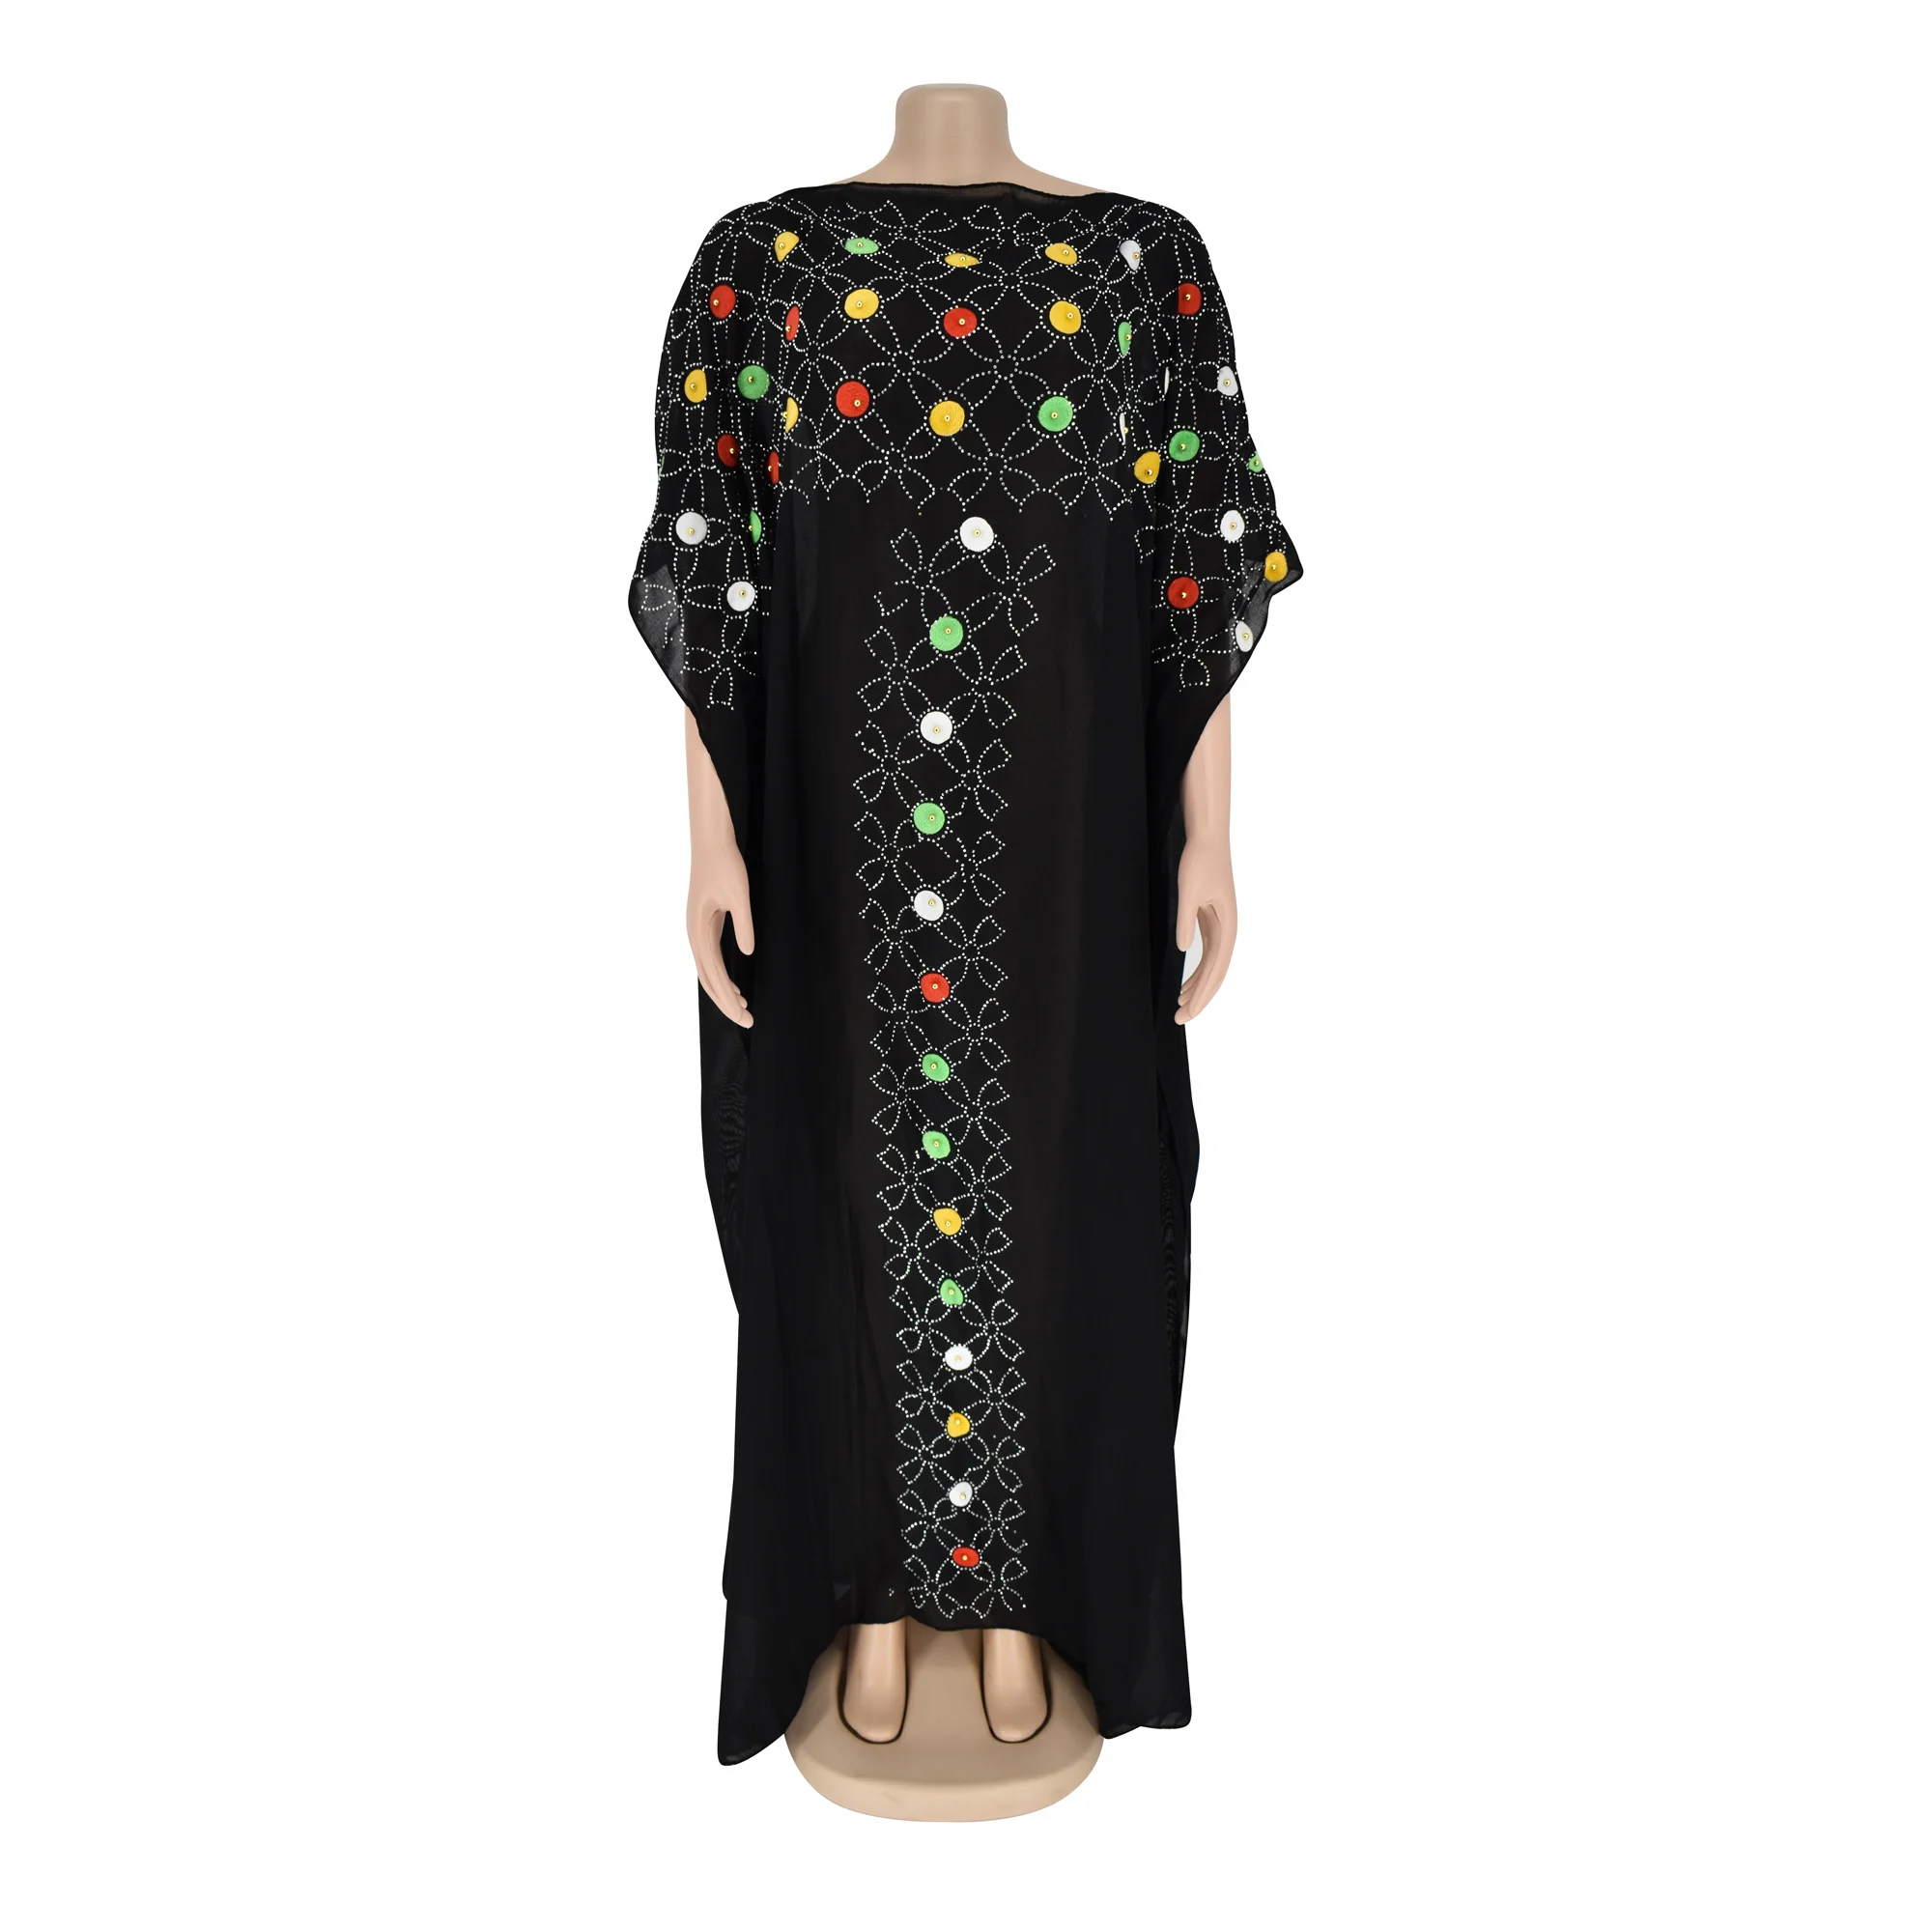 Tilapia Новое модное летнее платье размера плюс, полупрозрачное длинное платье в африканском стиле, с бисером, черное, vestidos